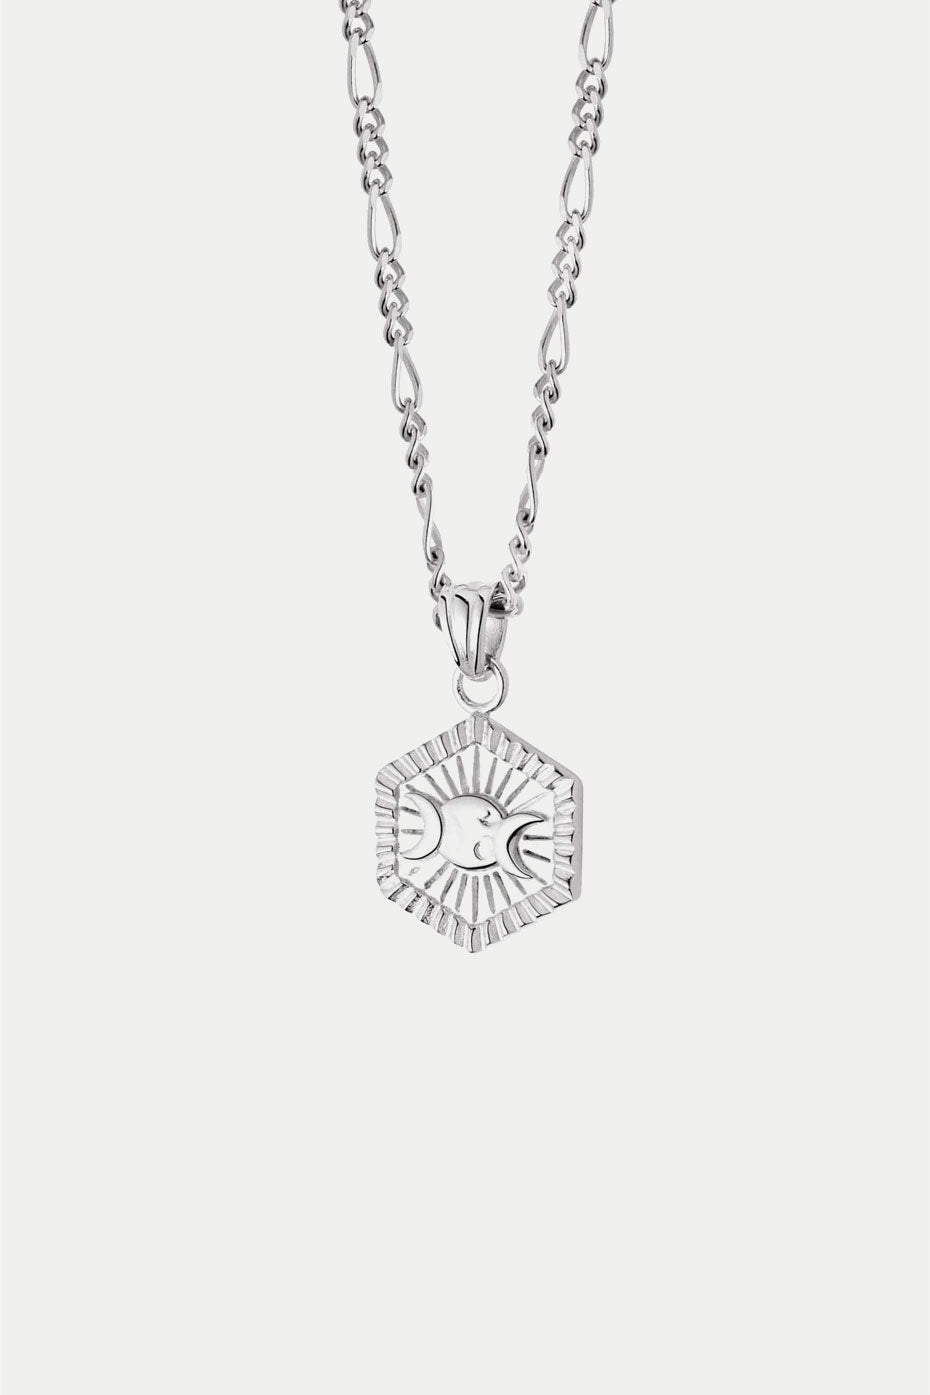 Daisy London Silver Estee Lalonde Goddess Hexagonal Necklace